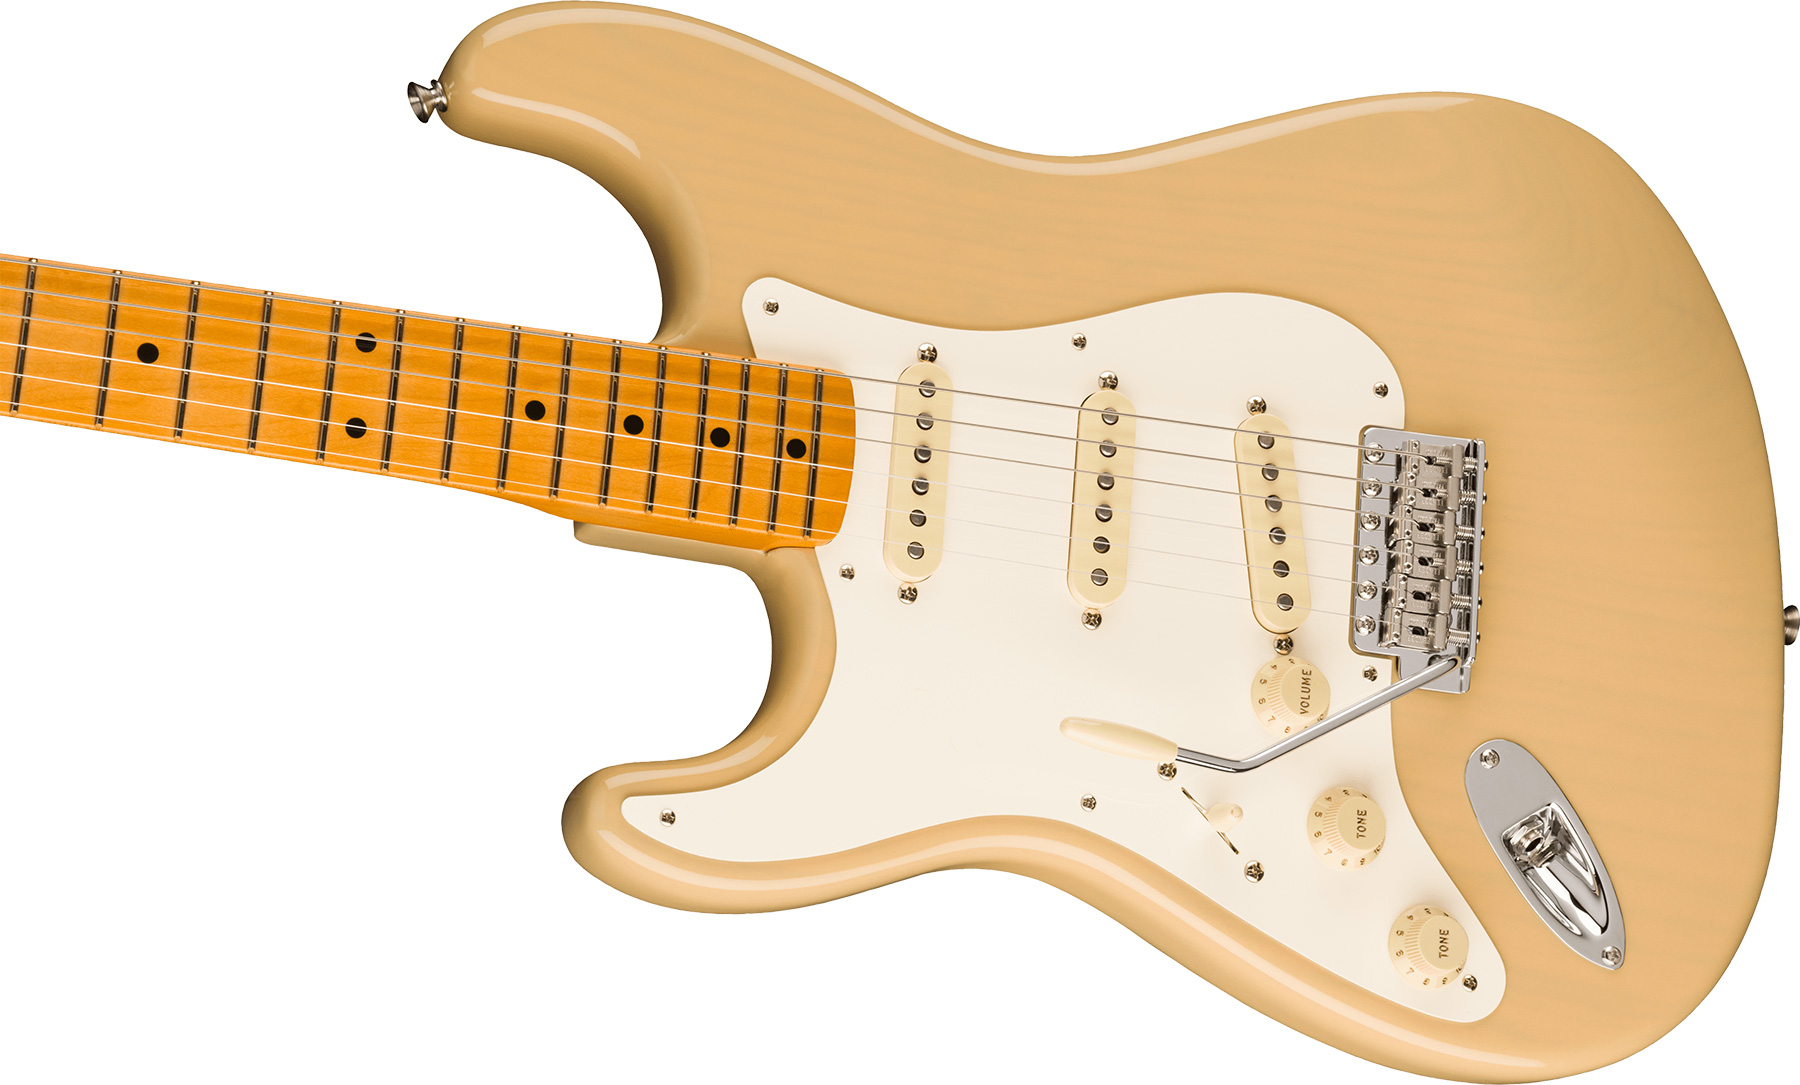 Fender Strat 1957 American Vintage Ii Lh Gaucher Usa 3s Trem Mn - Vintage Blonde - Left-handed electric guitar - Variation 2